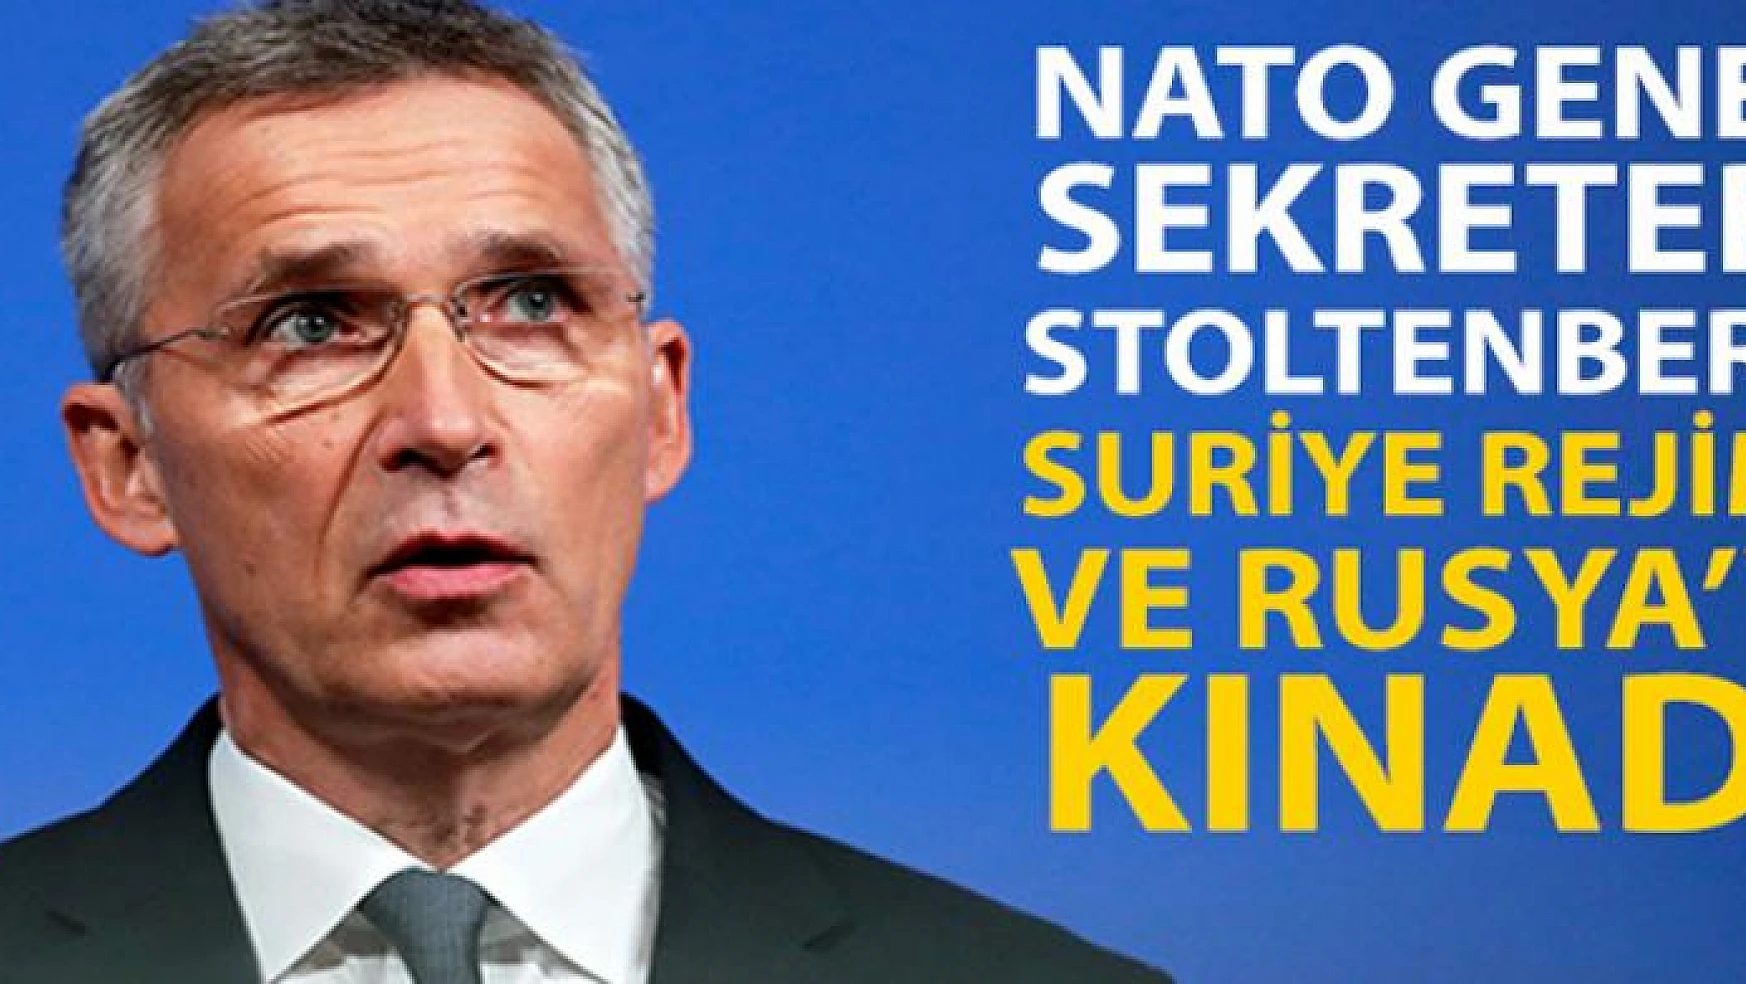 NATO Genel Sekreteri Stoltenberg, Suriye rejimi ve destekçisi Rusya'nın İdlib'deki saldırılarını kınadı